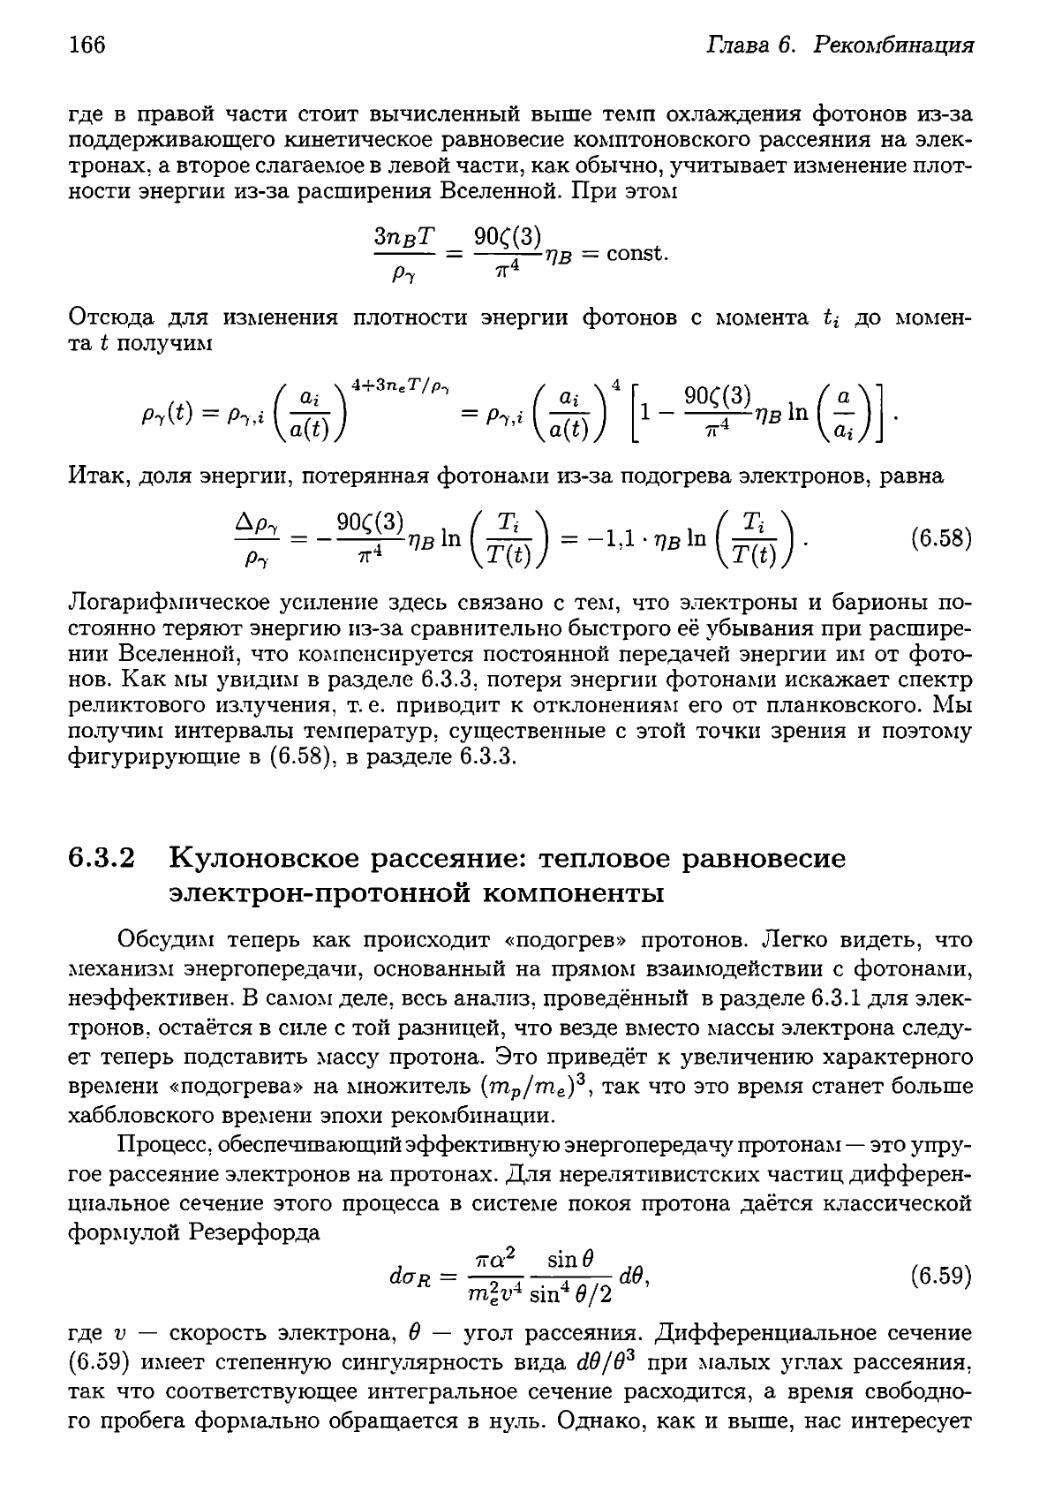 6.3.2. Кулоновское рассеяние: тепловое равновесие электрон-протонной компоненты